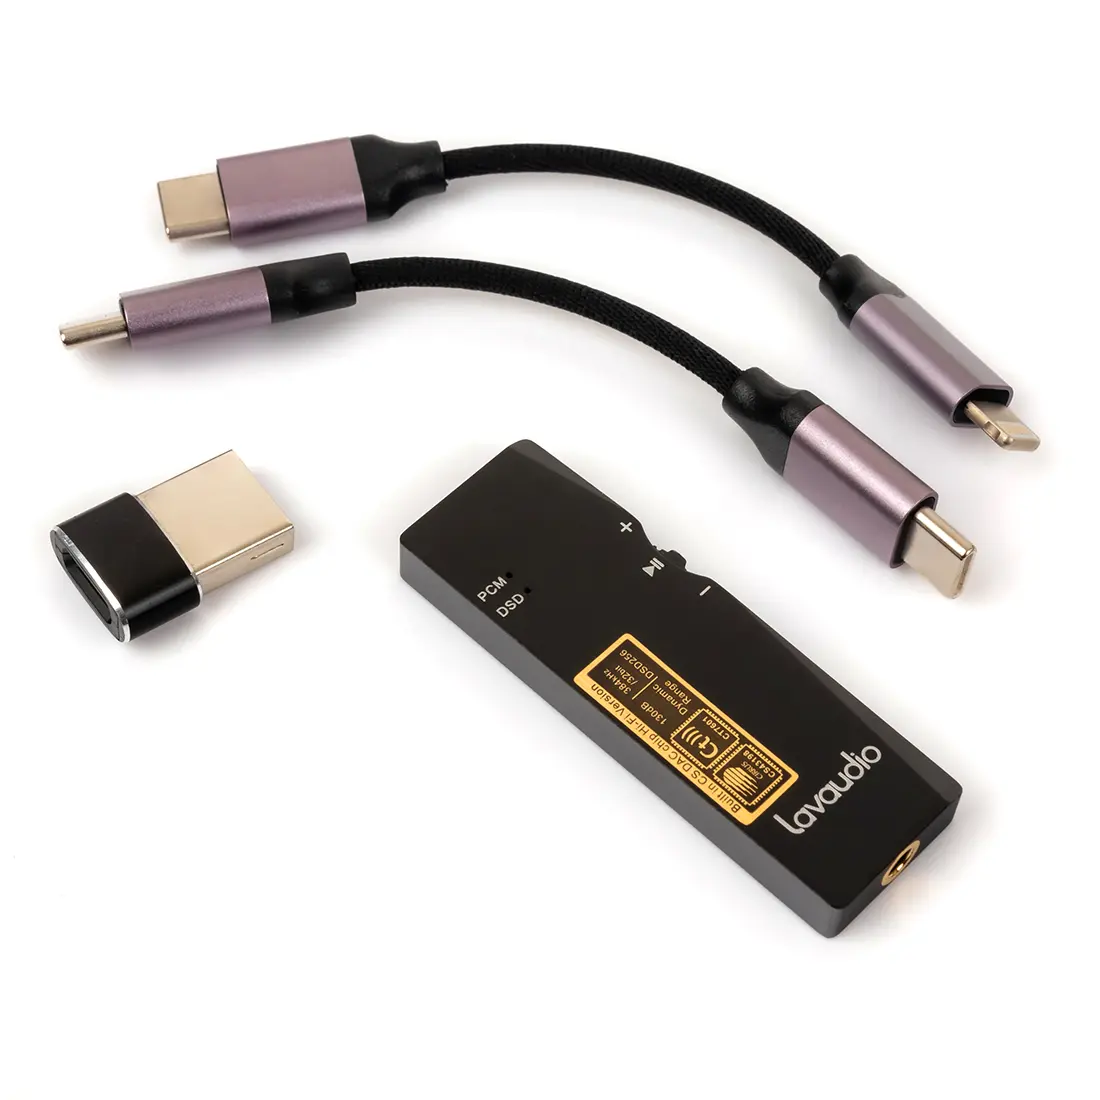 Mobilny wzmacniacz słuchawkowy DAC USB USB-C Lighting apple Hi-Fi Aux 3,5mm DS100